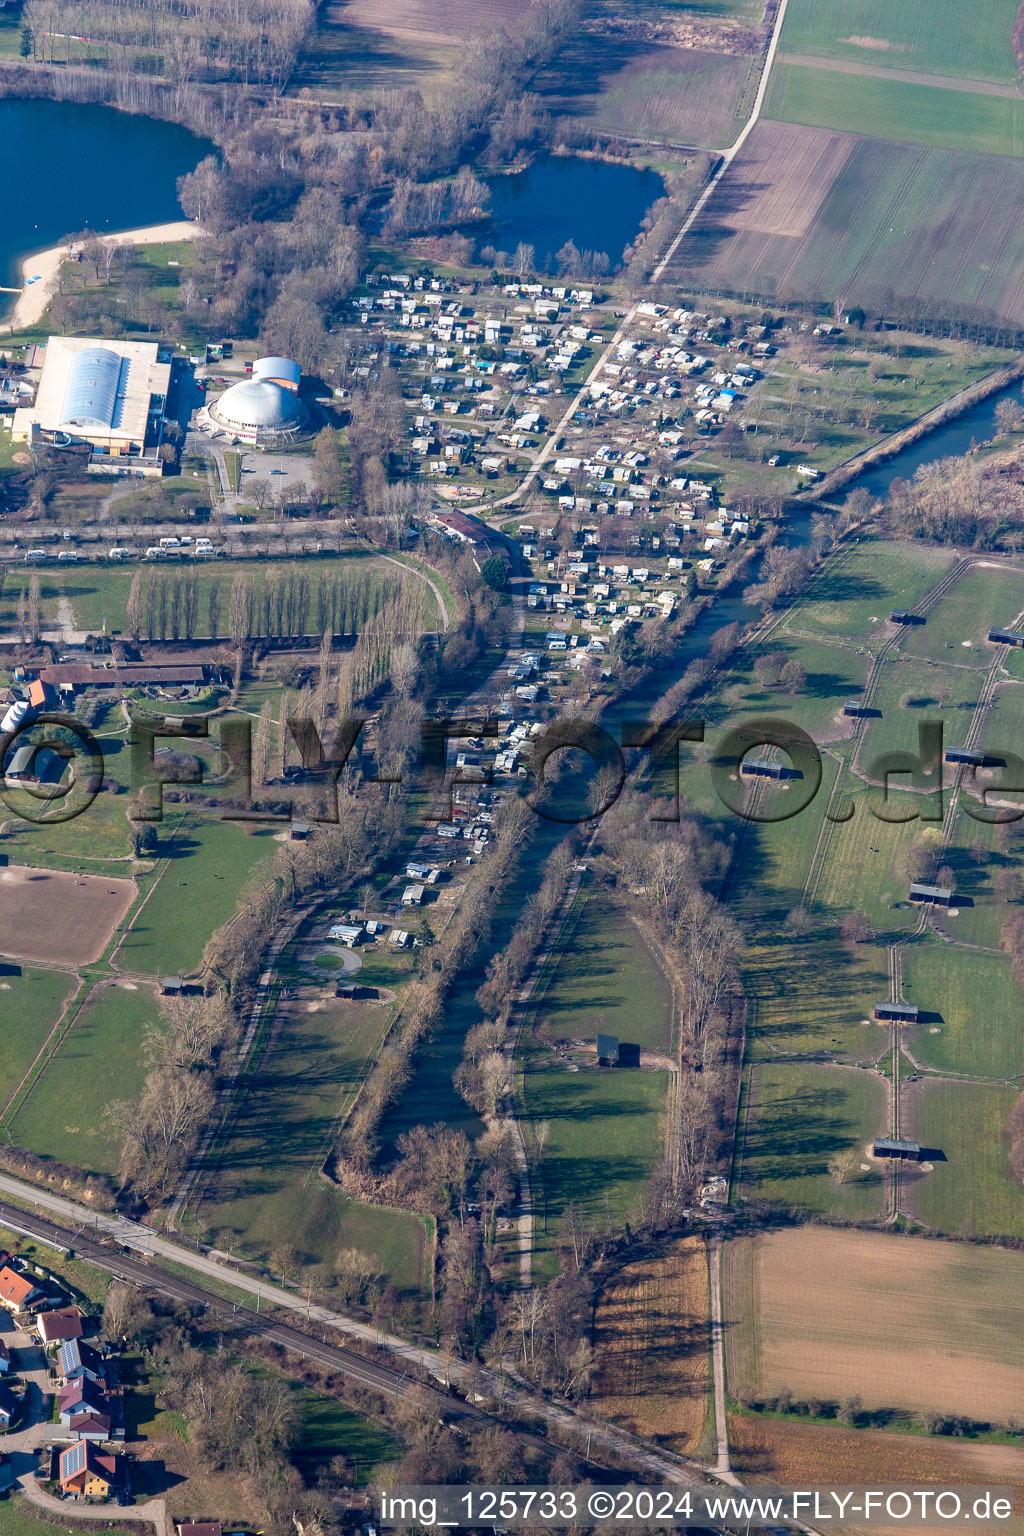 Luftbild von Campingplatz Rülzheim zwischen Dampfnudel und Straußenfarm Mhou im Bundesland Rheinland-Pfalz, Deutschland